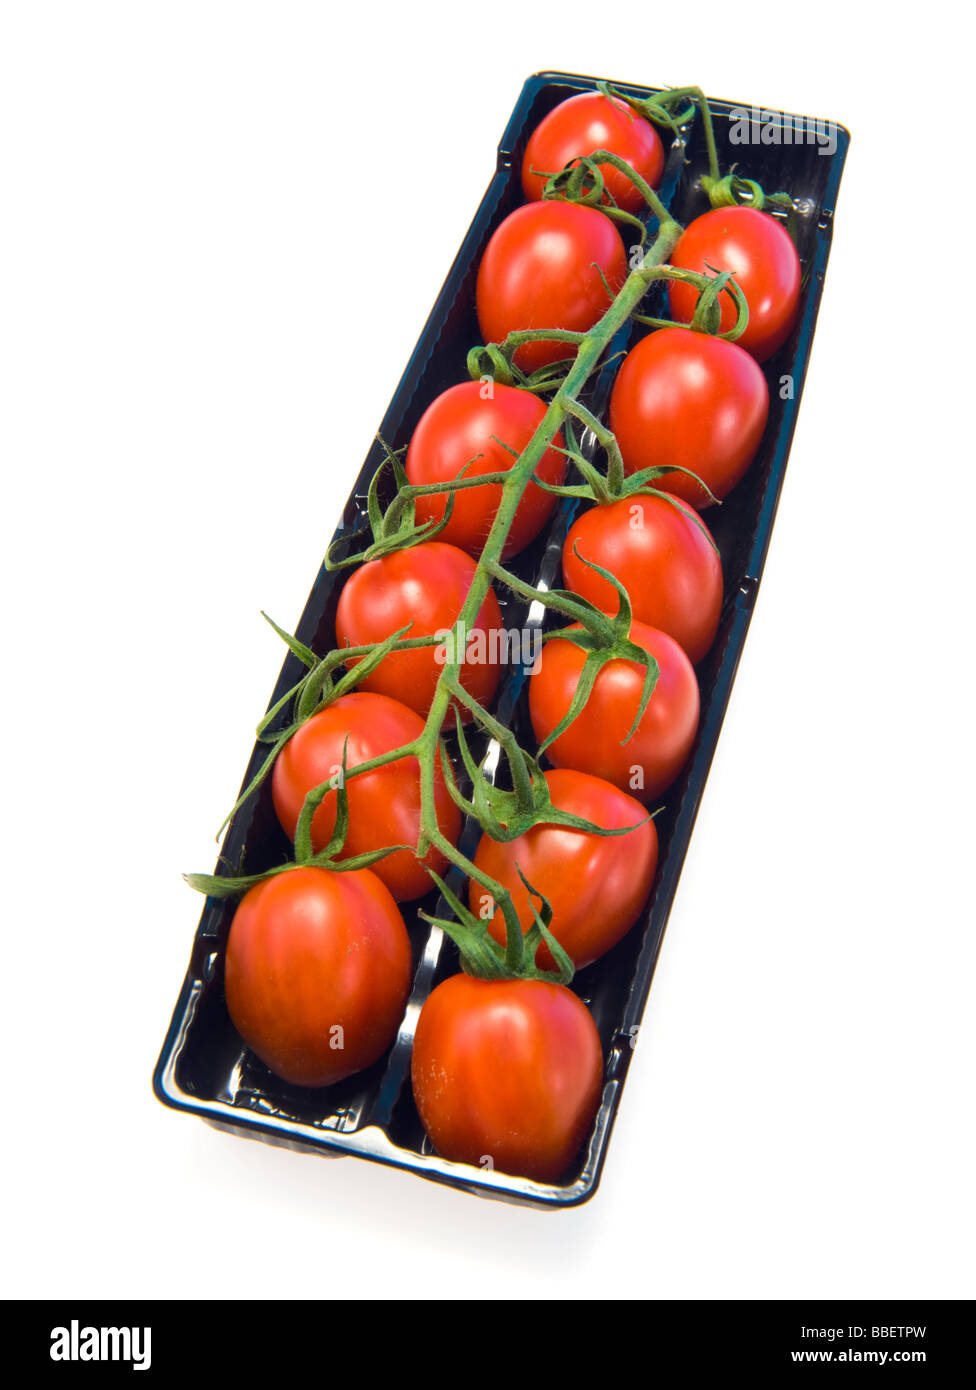 Pflaumentomate Rispe in schwarz verkaufen Box rot grün schwarz weißen Hintergrund Plumtomatoes Tast lecker gesund Gesundheit feine Mini Essen Stockfoto